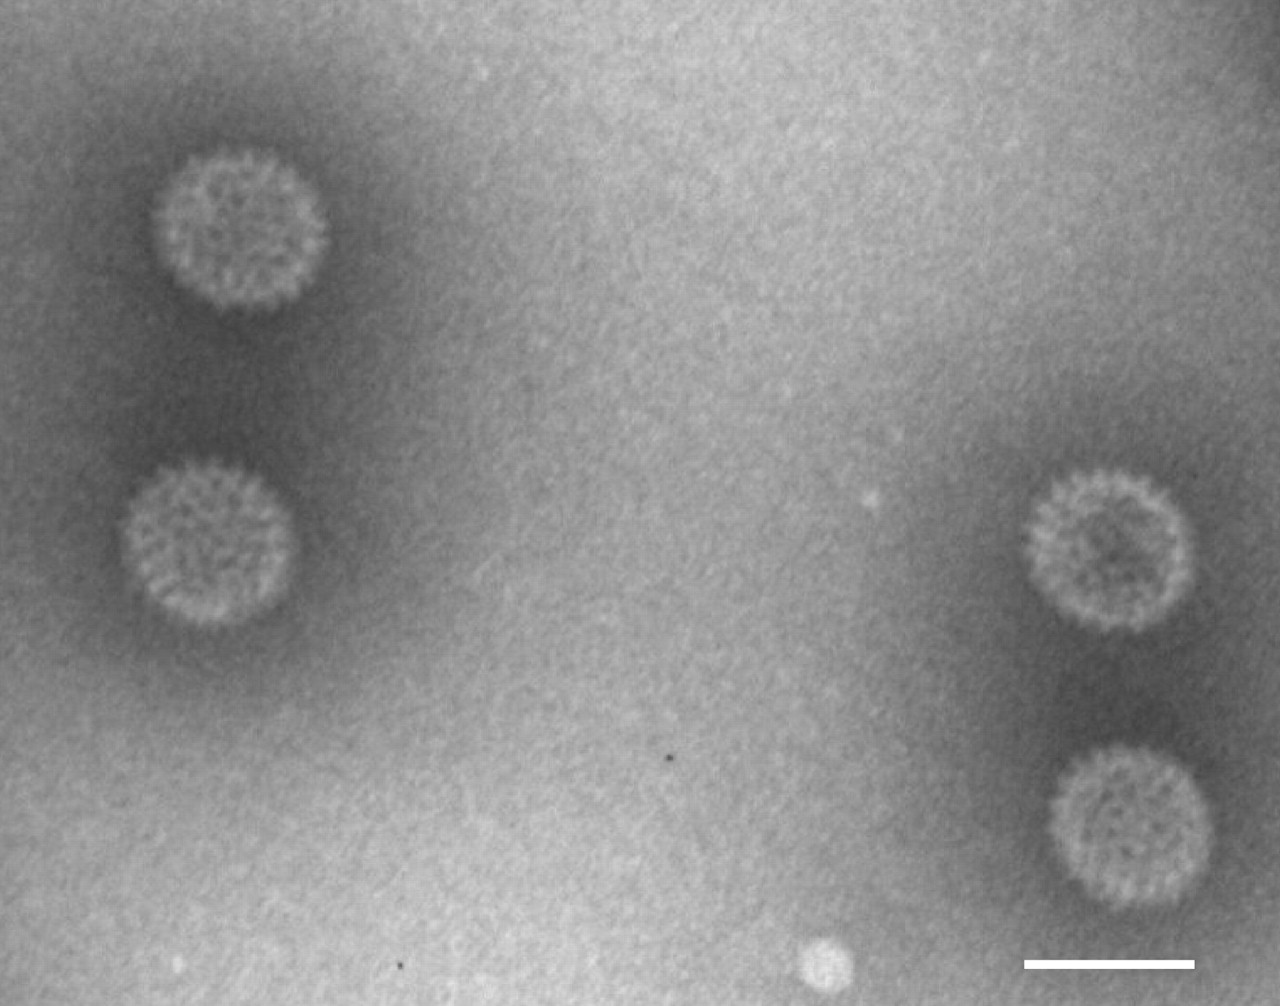 Yunnan orbivirus infection